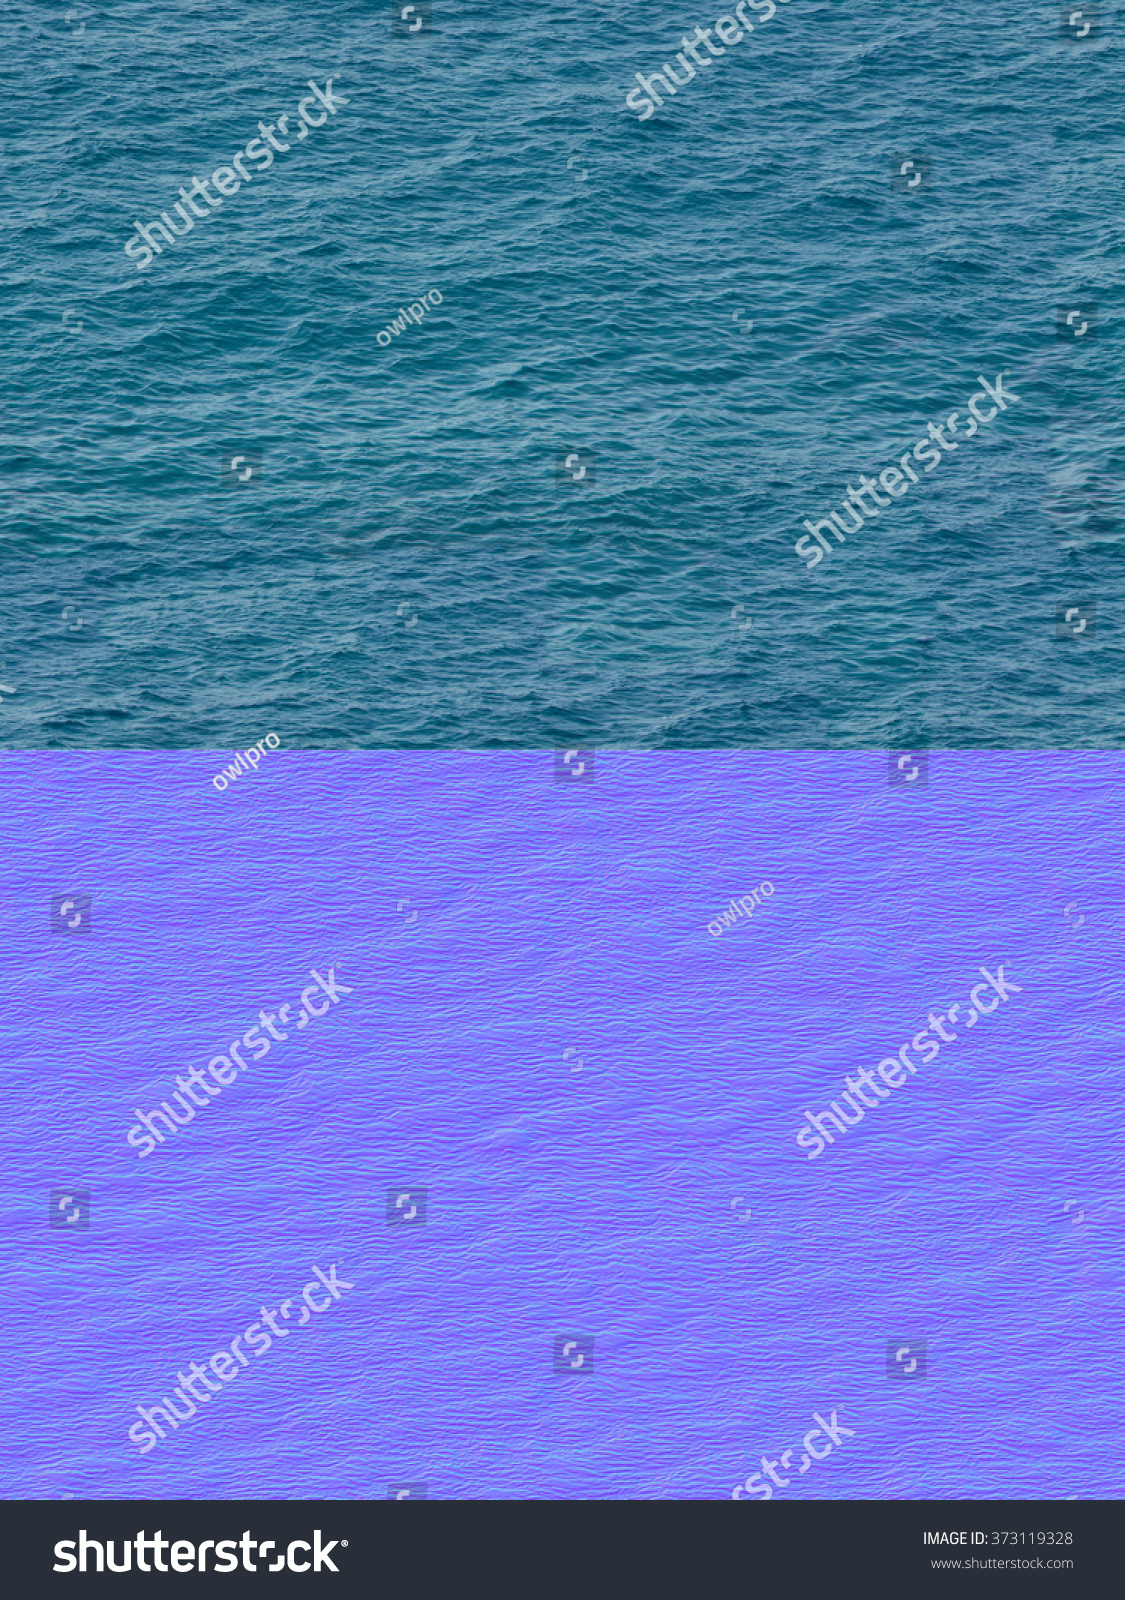 ocean normal map